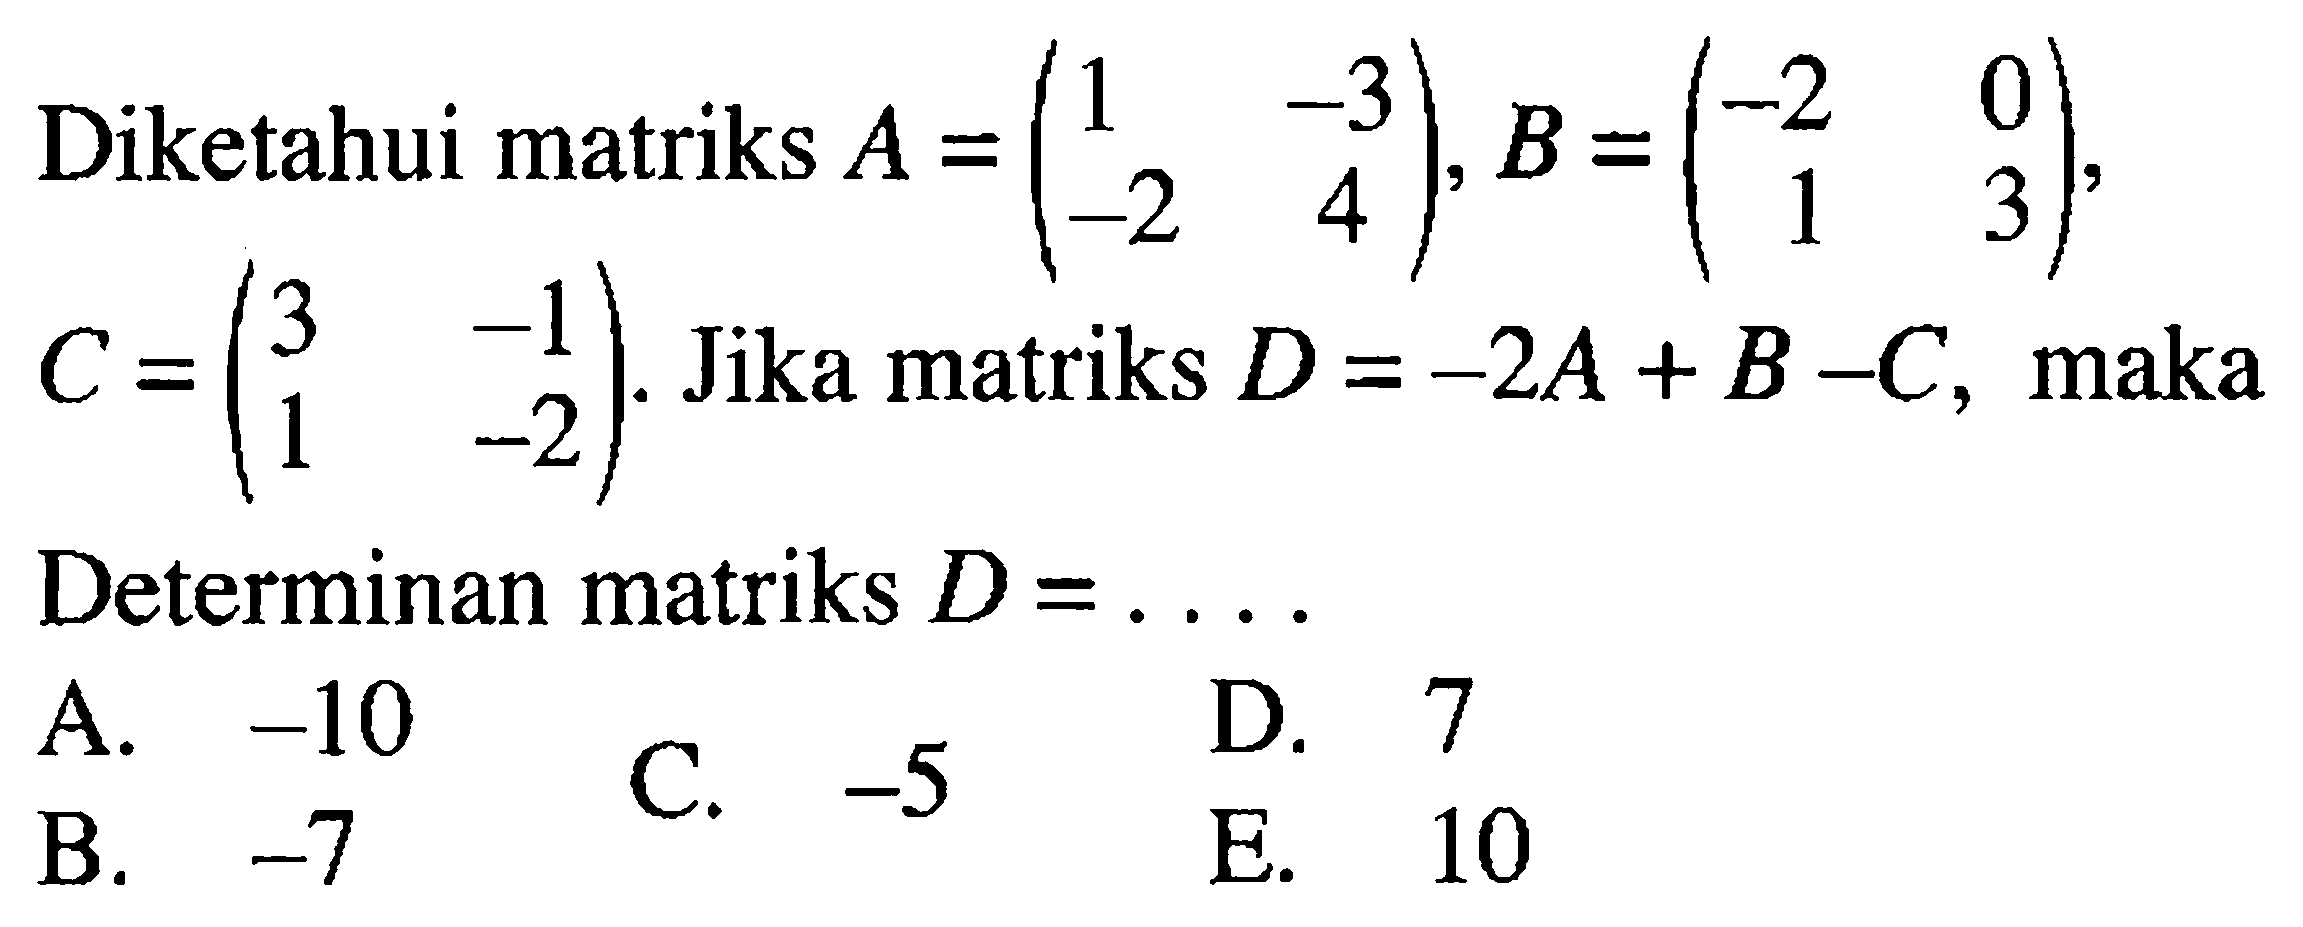 Diketahui matriks A =(1 -3 -2 4), B =(-2 0 1 3). Jika matriks D=-2A+ B-C, maka Determinan matriks D =